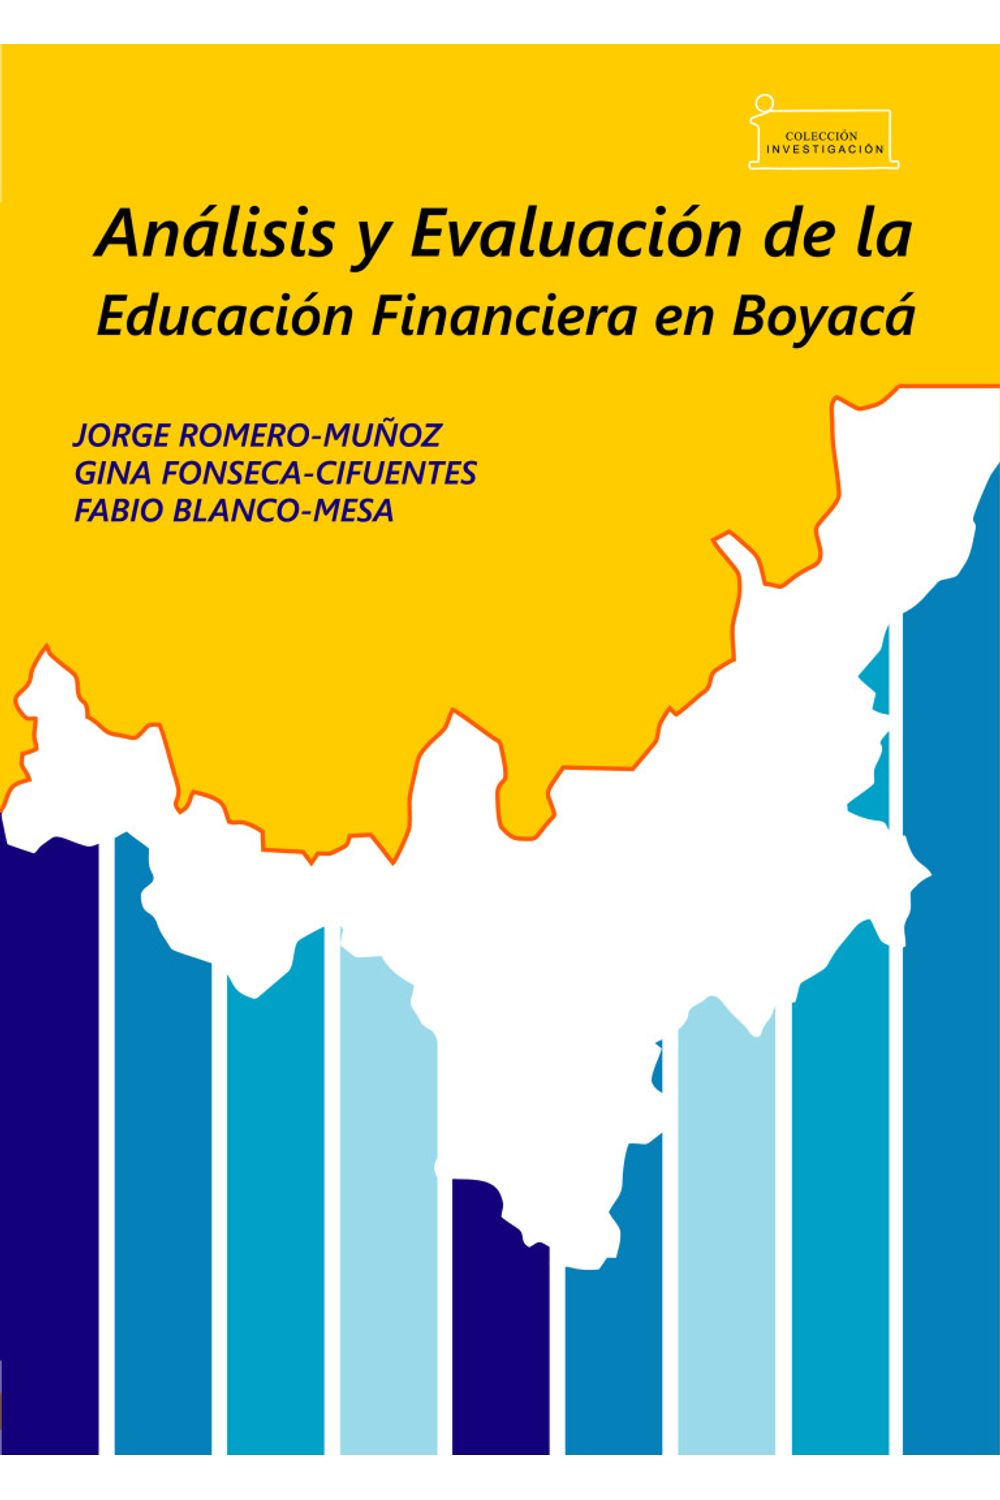 analisis-y-evaluacion-de-la-educacion-financiera-en-boyaca-analysis-and-evaluation-of-financial-education-in-boyaca-9789586604833-uptc